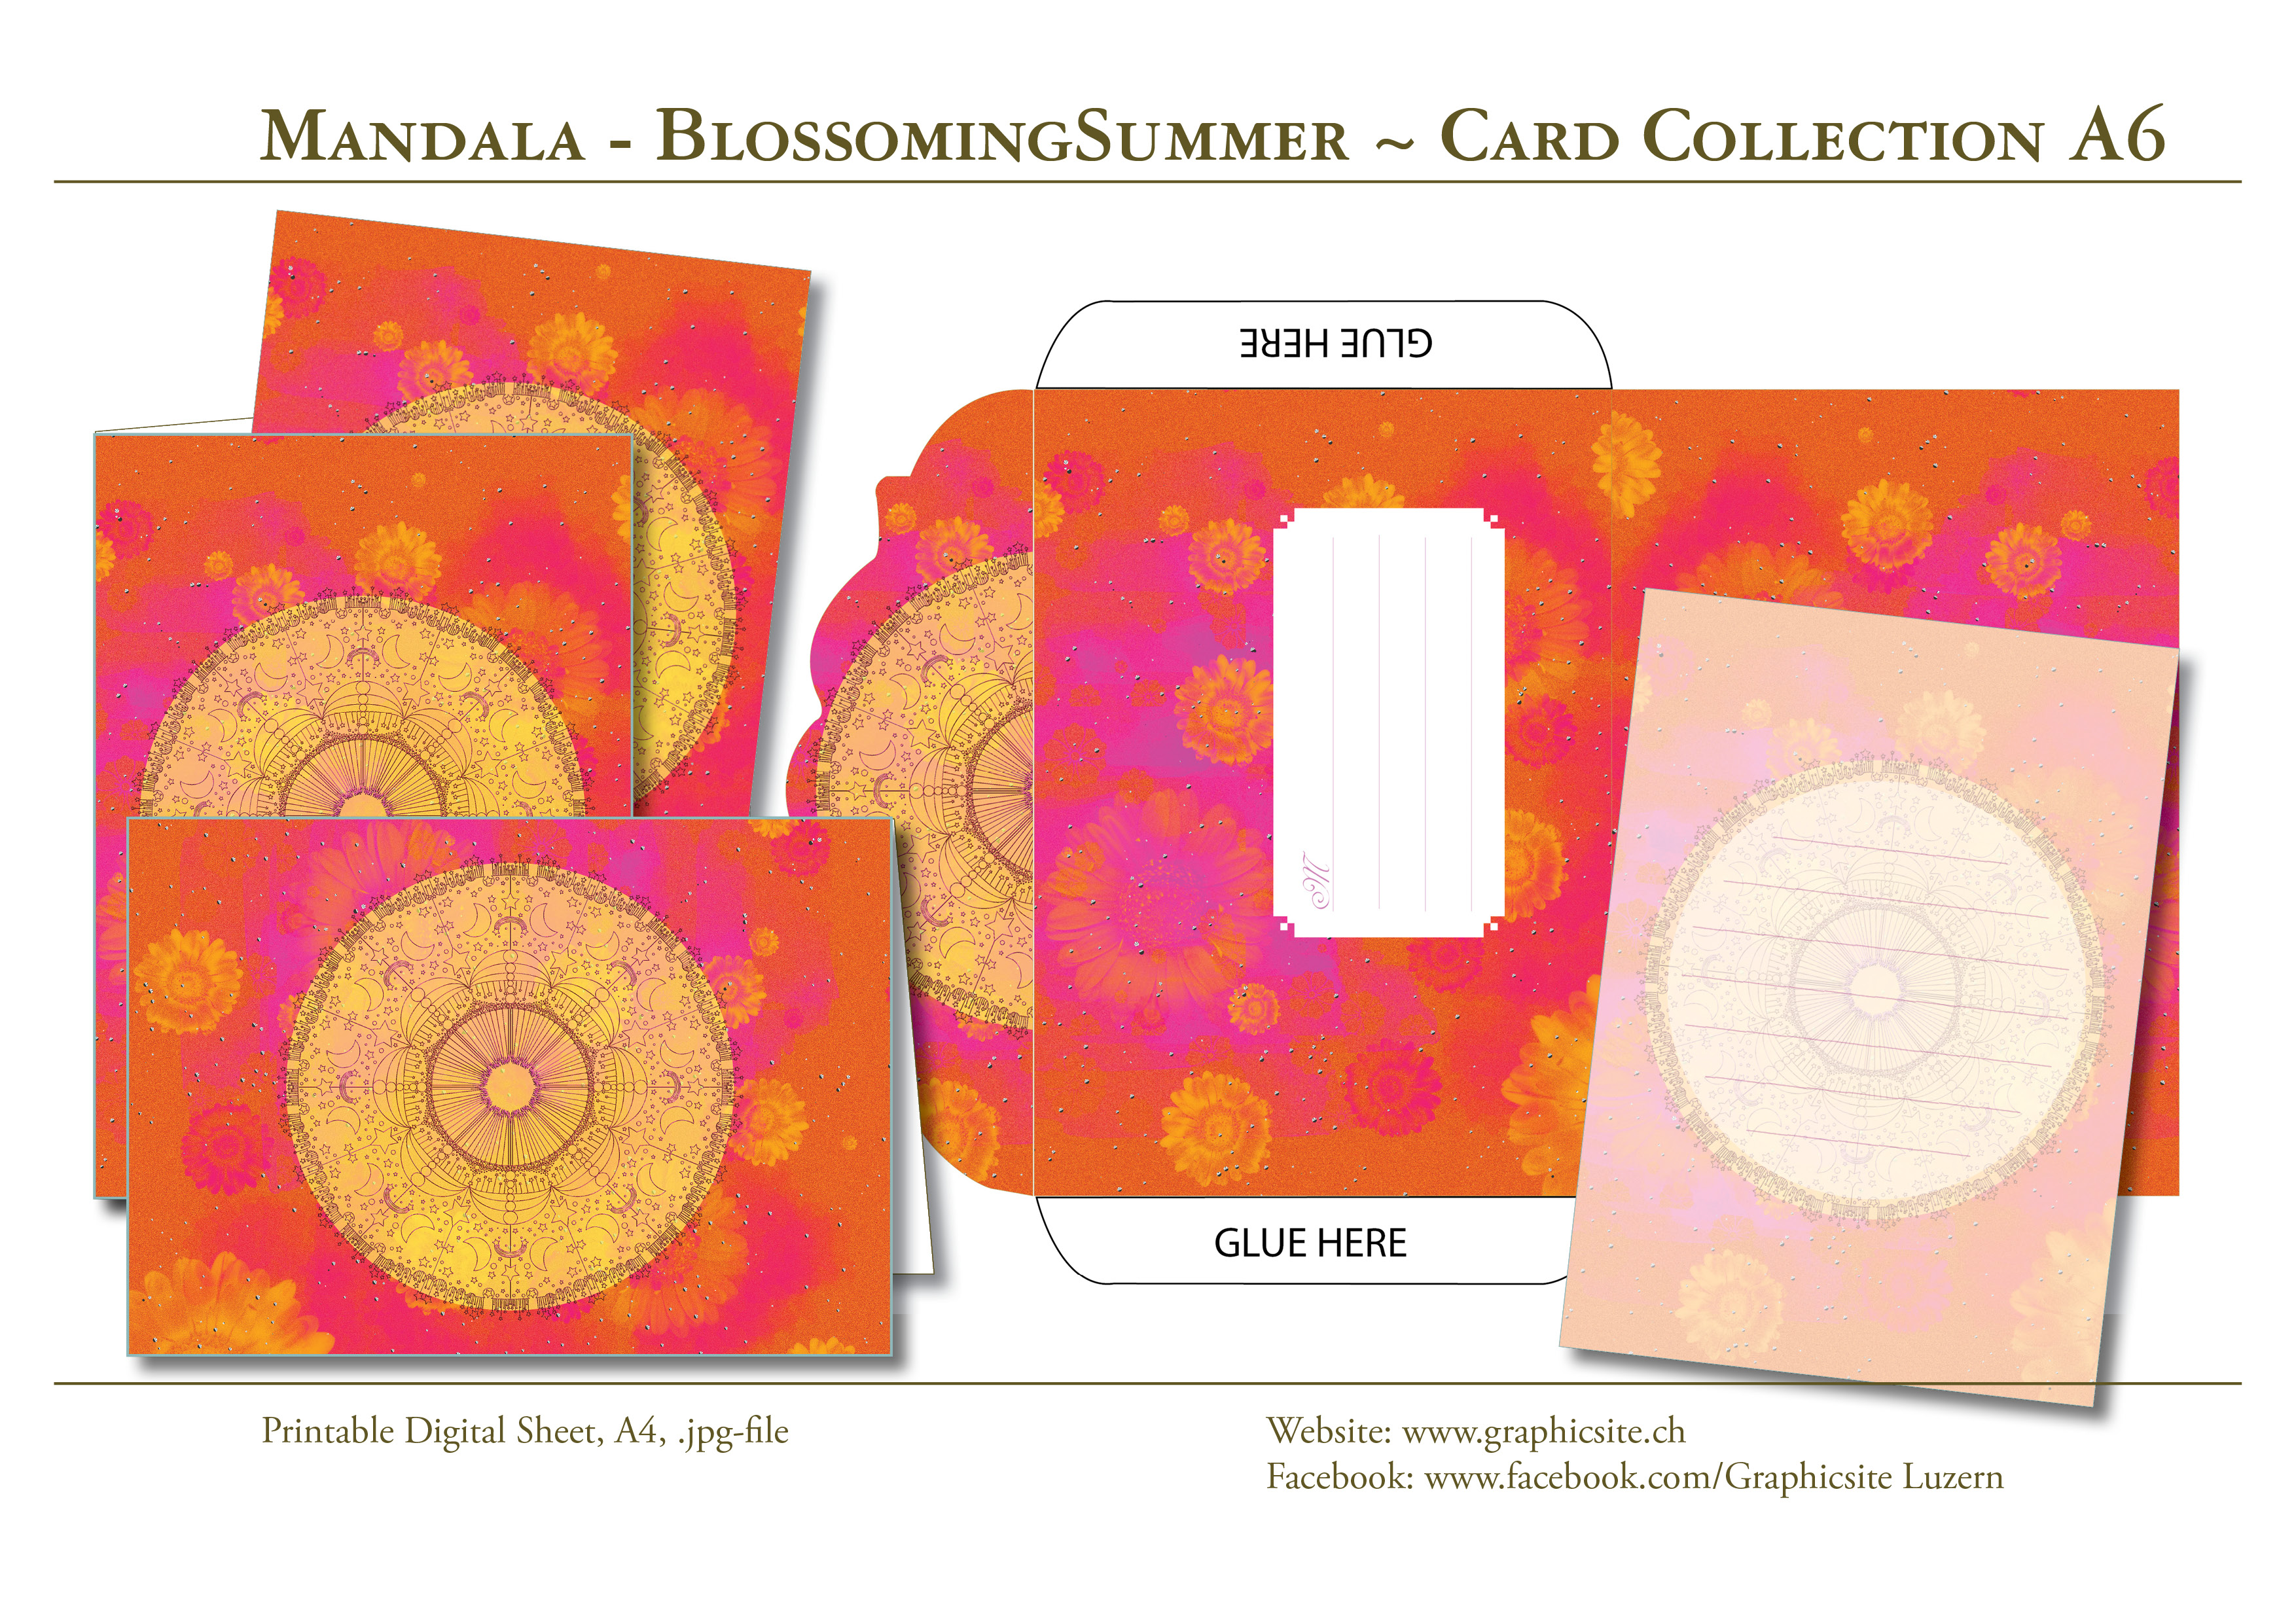 Printable Digital Sheets - DIN A-Format - MANDALA BlossomingSummer, Greeting Cards, Yoga, Meditation, Cards, Envelop, Graphic Design, Luzern